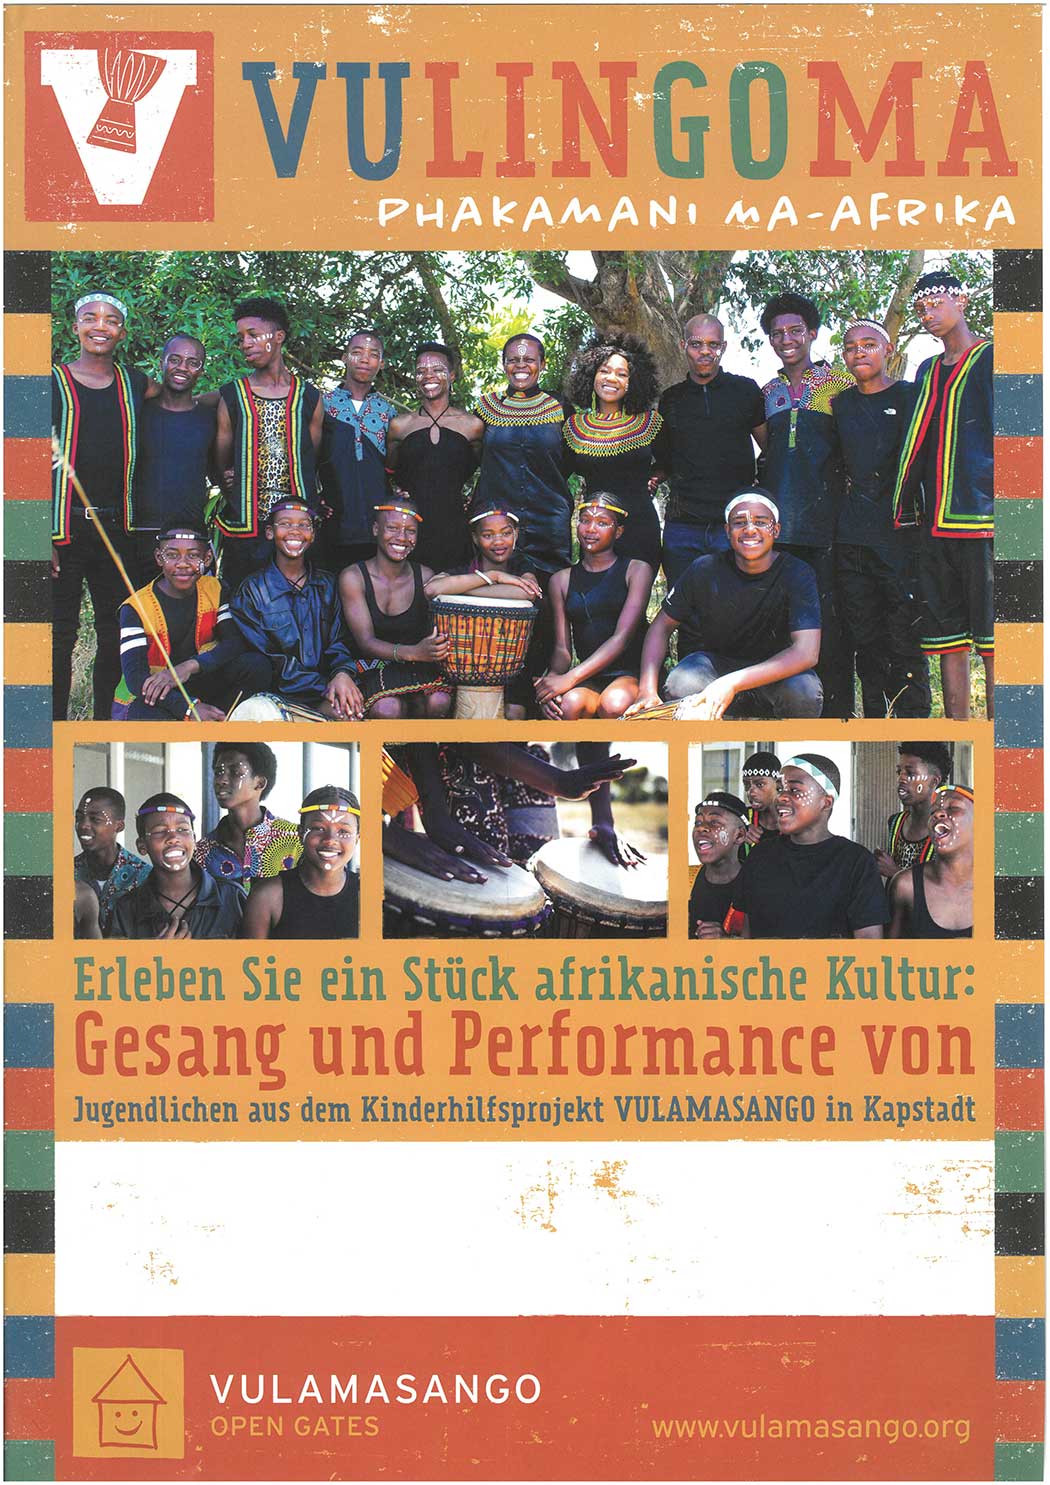 Plakat Vulingoma Rudolf-Steiner-Schule München Schwabing